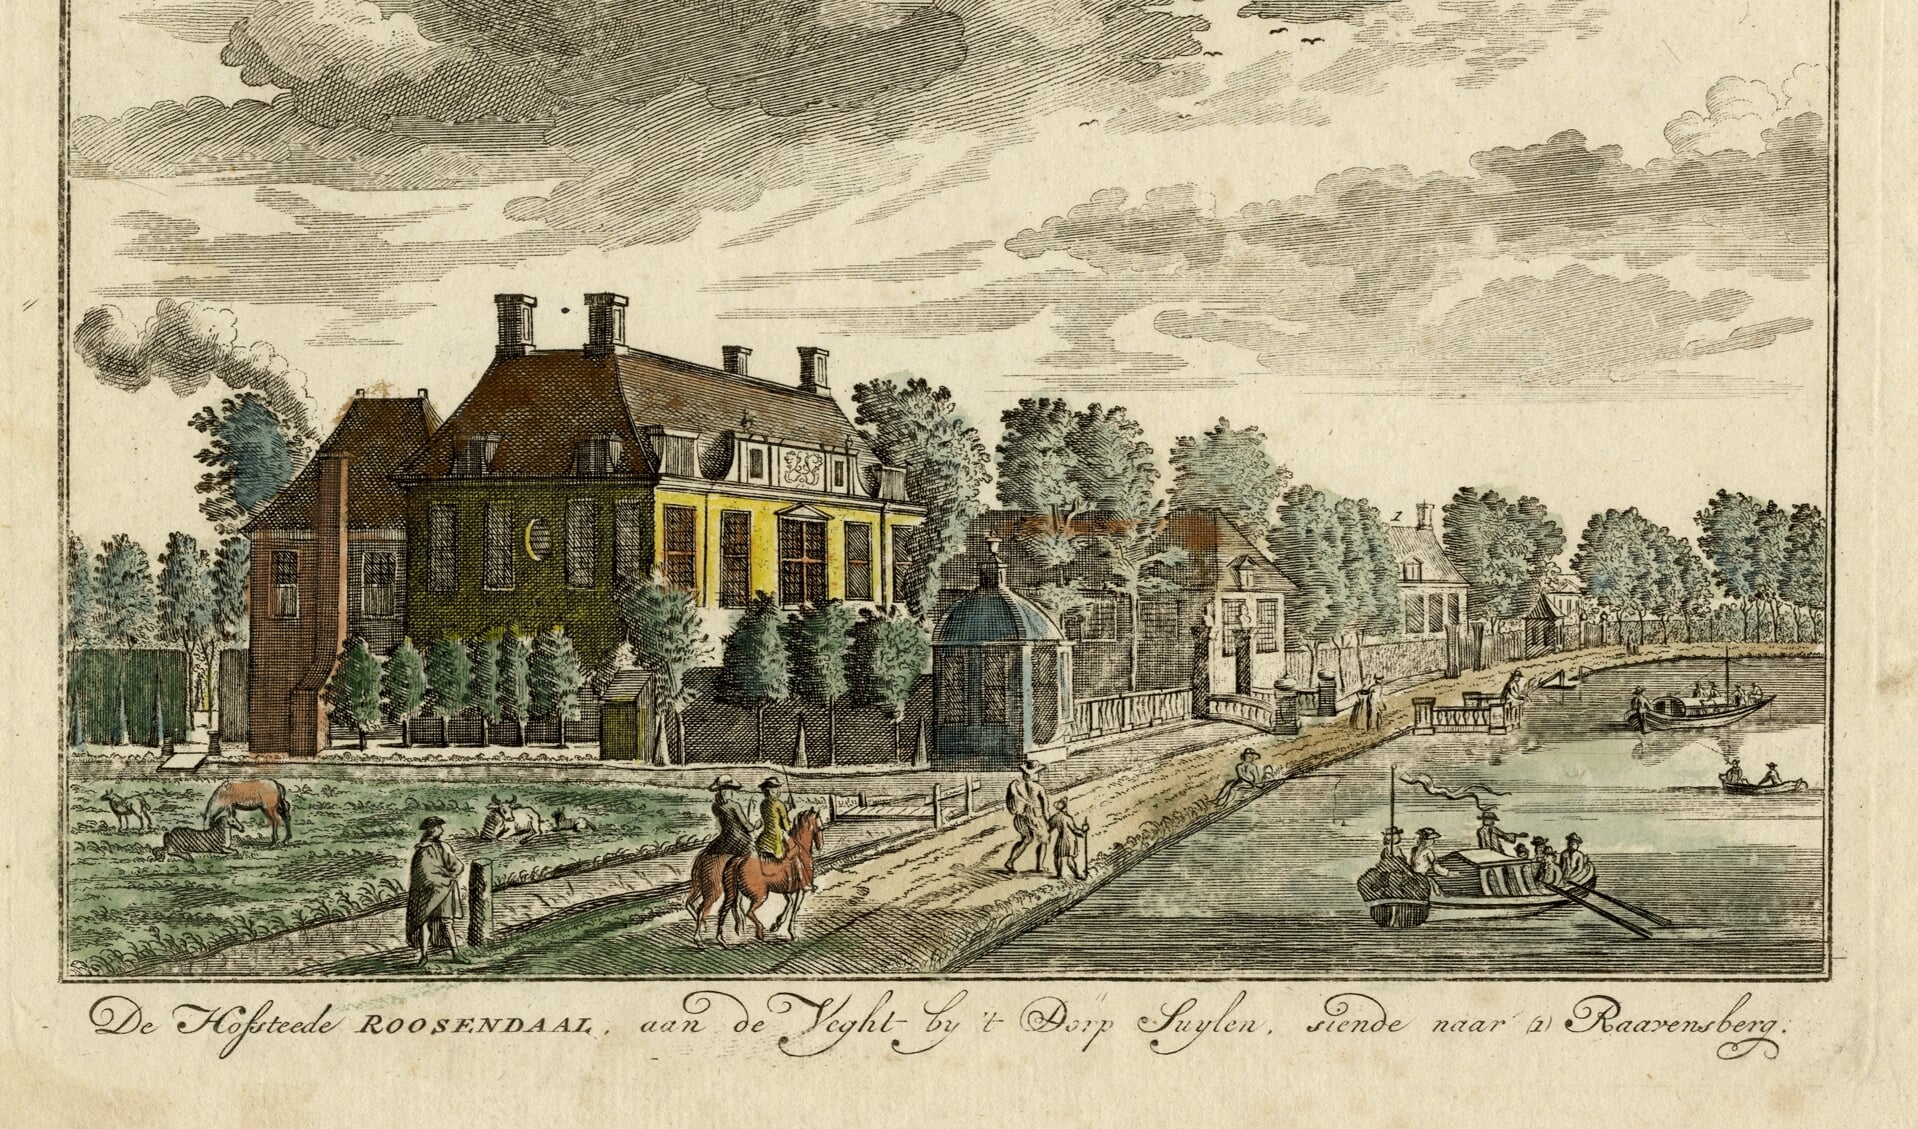 Afgebeeld is het huis Roosendaal aan de Vecht in Achttienhoven in 1718 (beeldbank Utrechts Archief; eigendom museum Flehite). Het lag ter hoogte van Vechtdijk 150 in Utrecht. Nu is deze plek onderdeel van Overvecht, het gebied dat in 1954 van de gemeente Maartensdijk naar Utrecht overging.